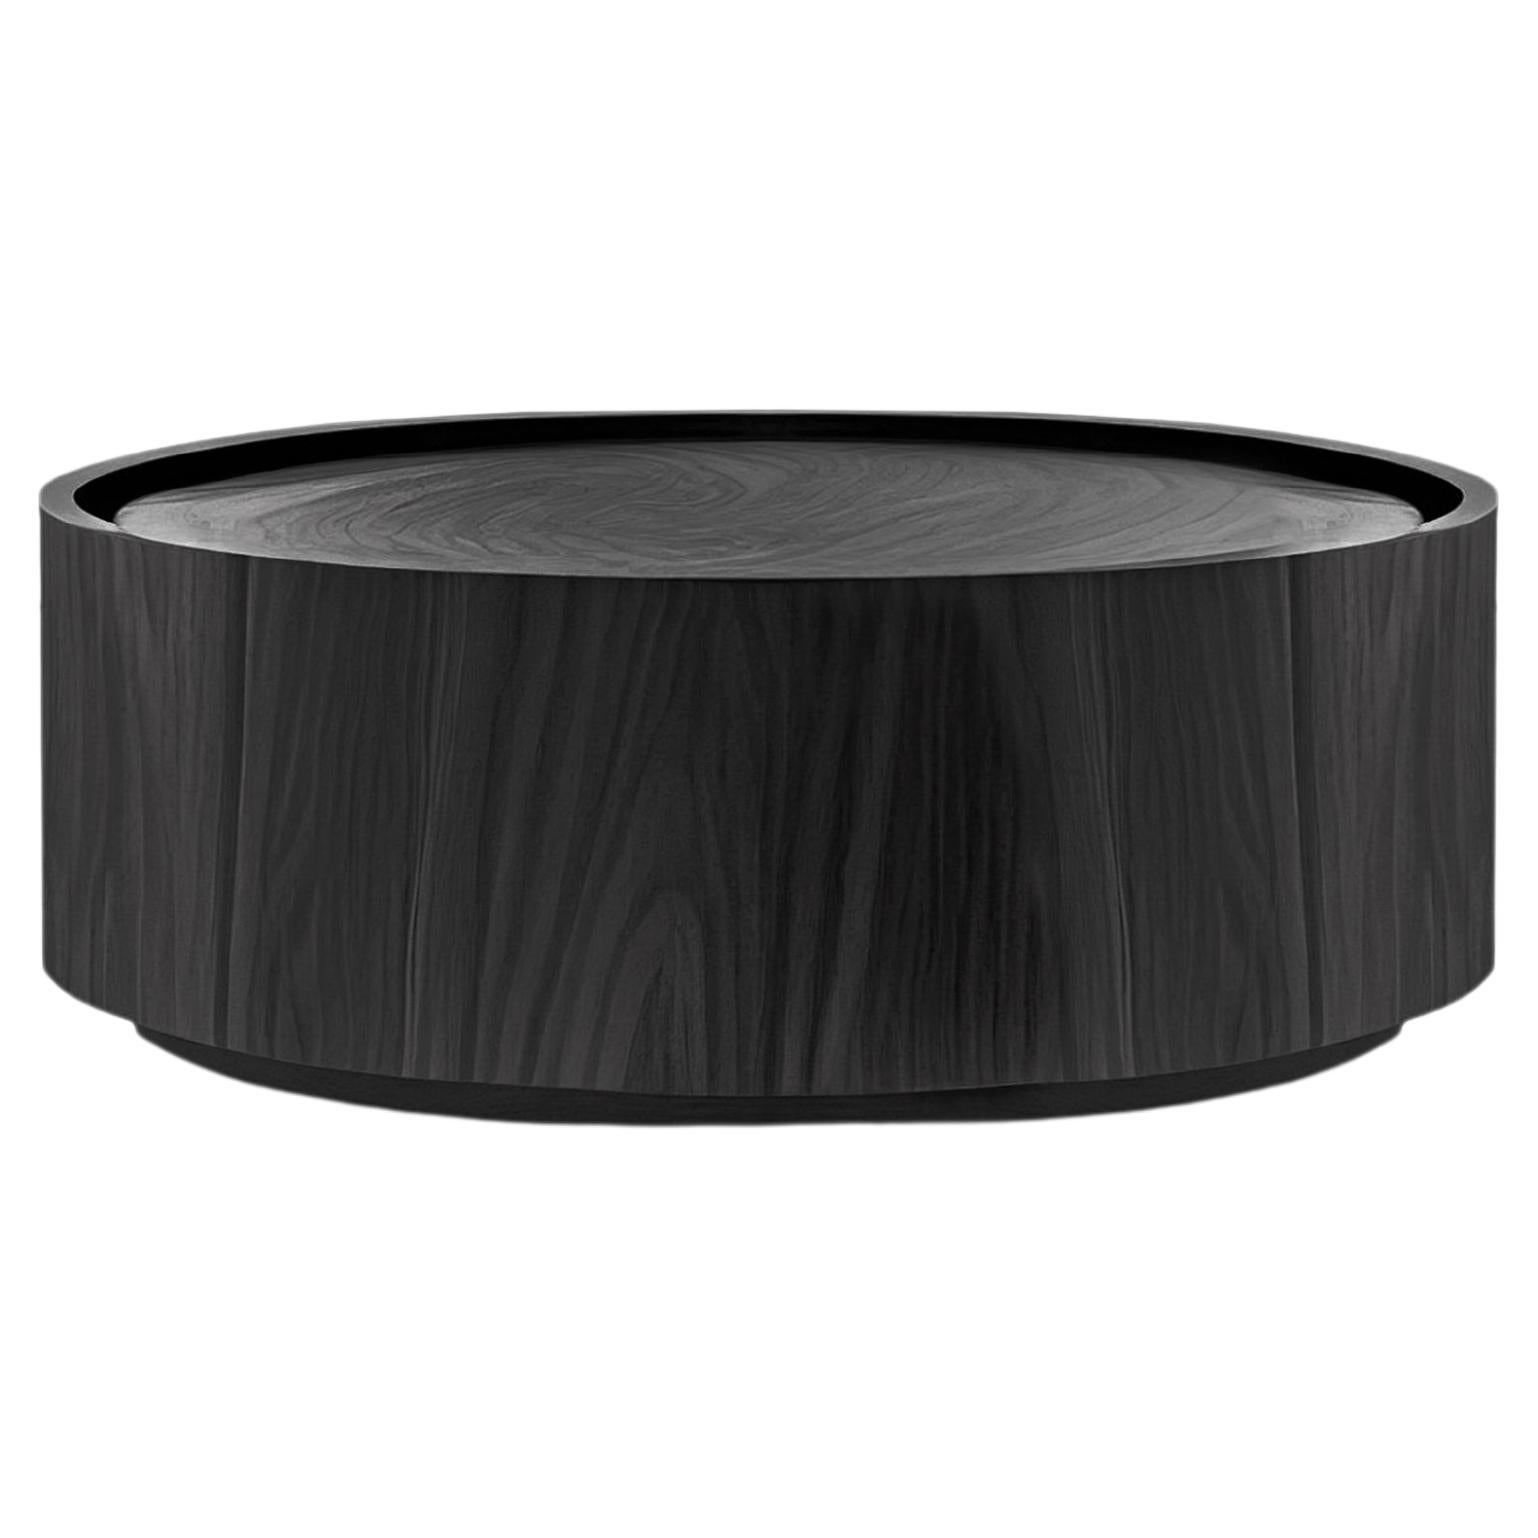 Table basse ronde en placage de bois teinté noir par Nono Furniture